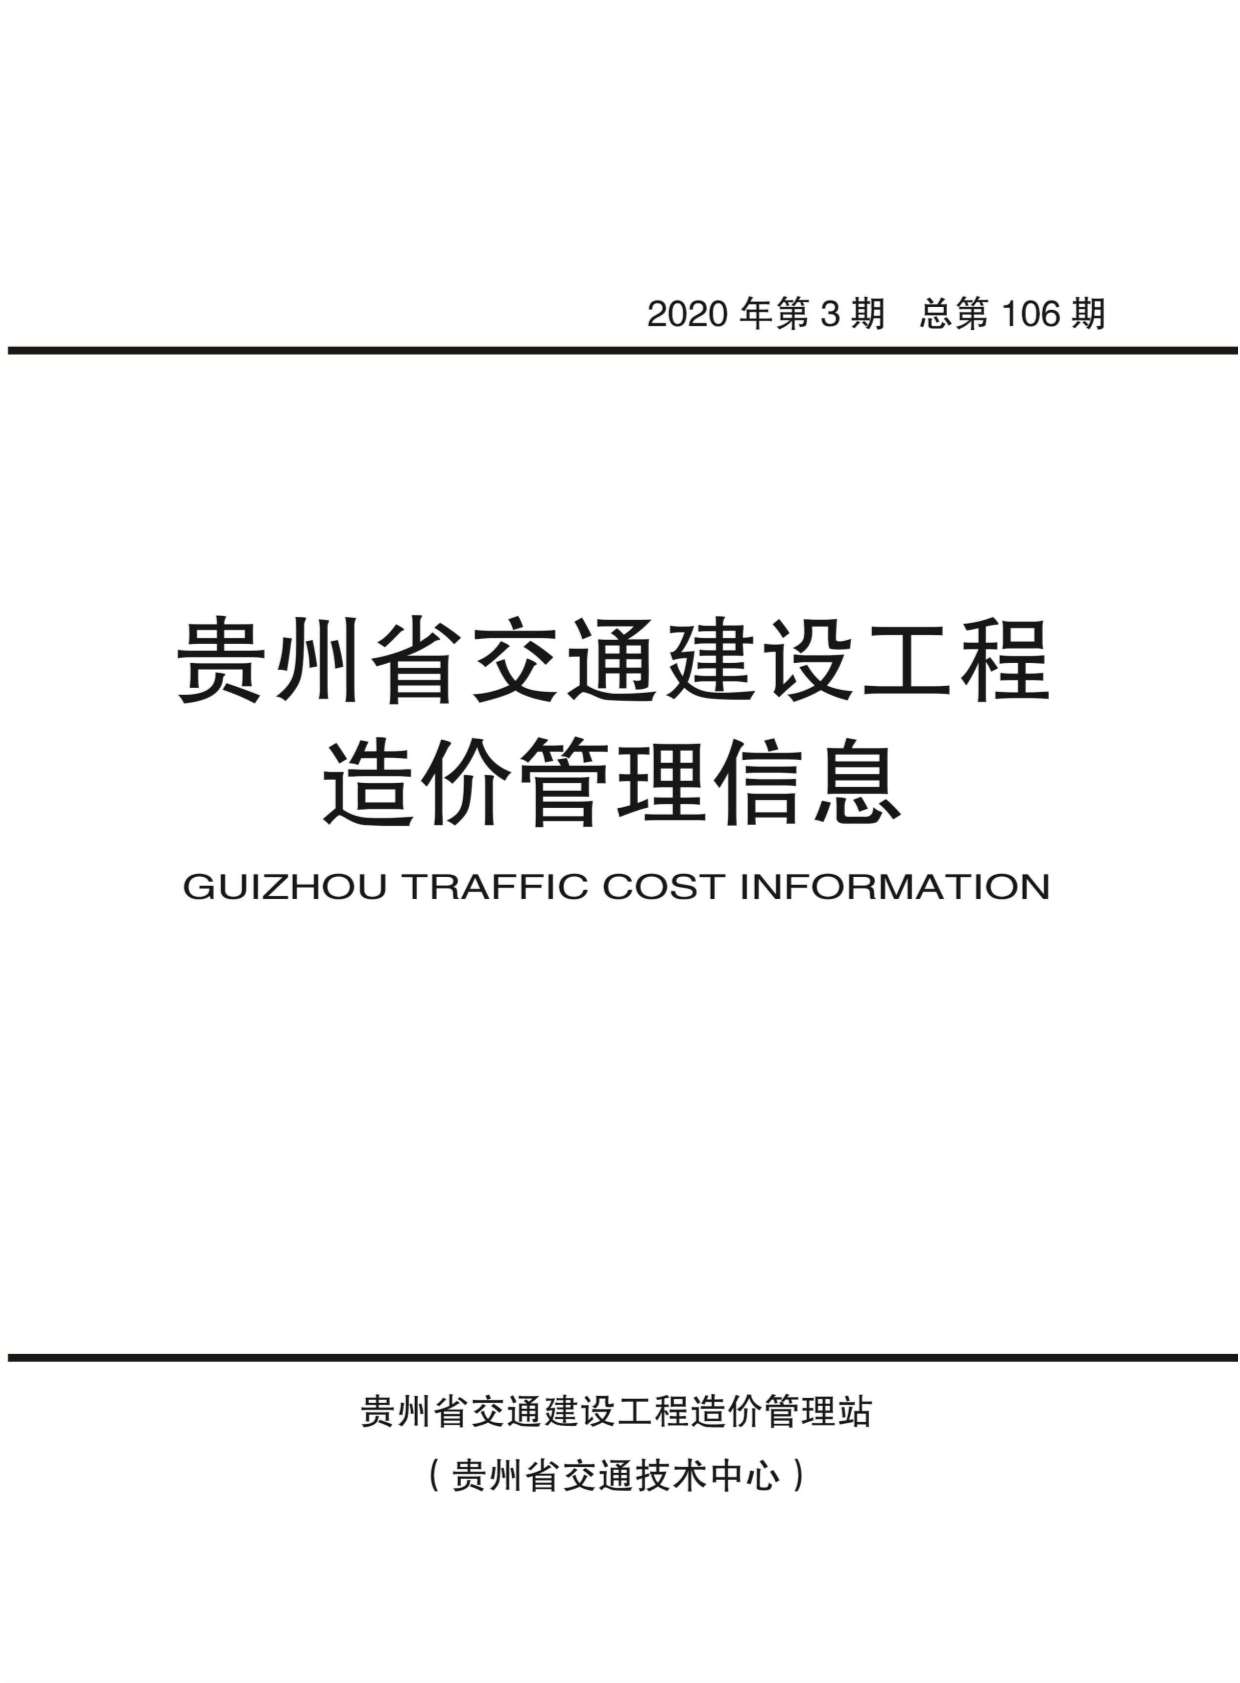 贵州省2020年3月交通建设工程造价管理信息造价库信息价